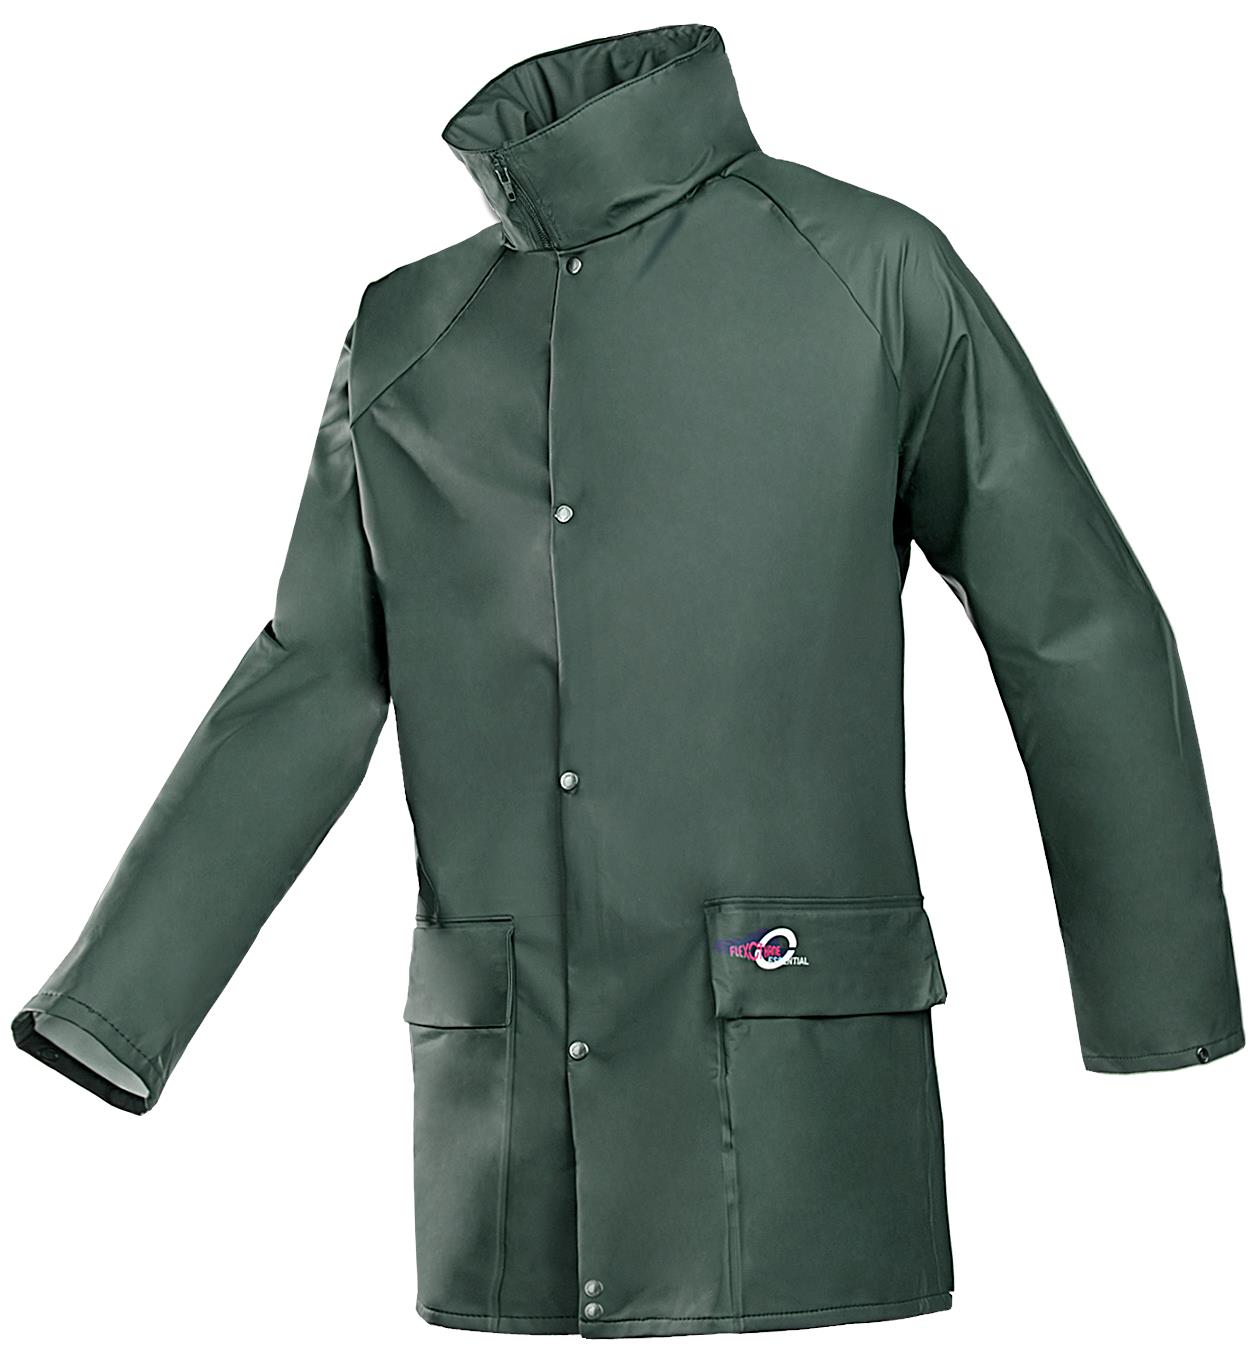 Rain jacket, Bielefeld 4265